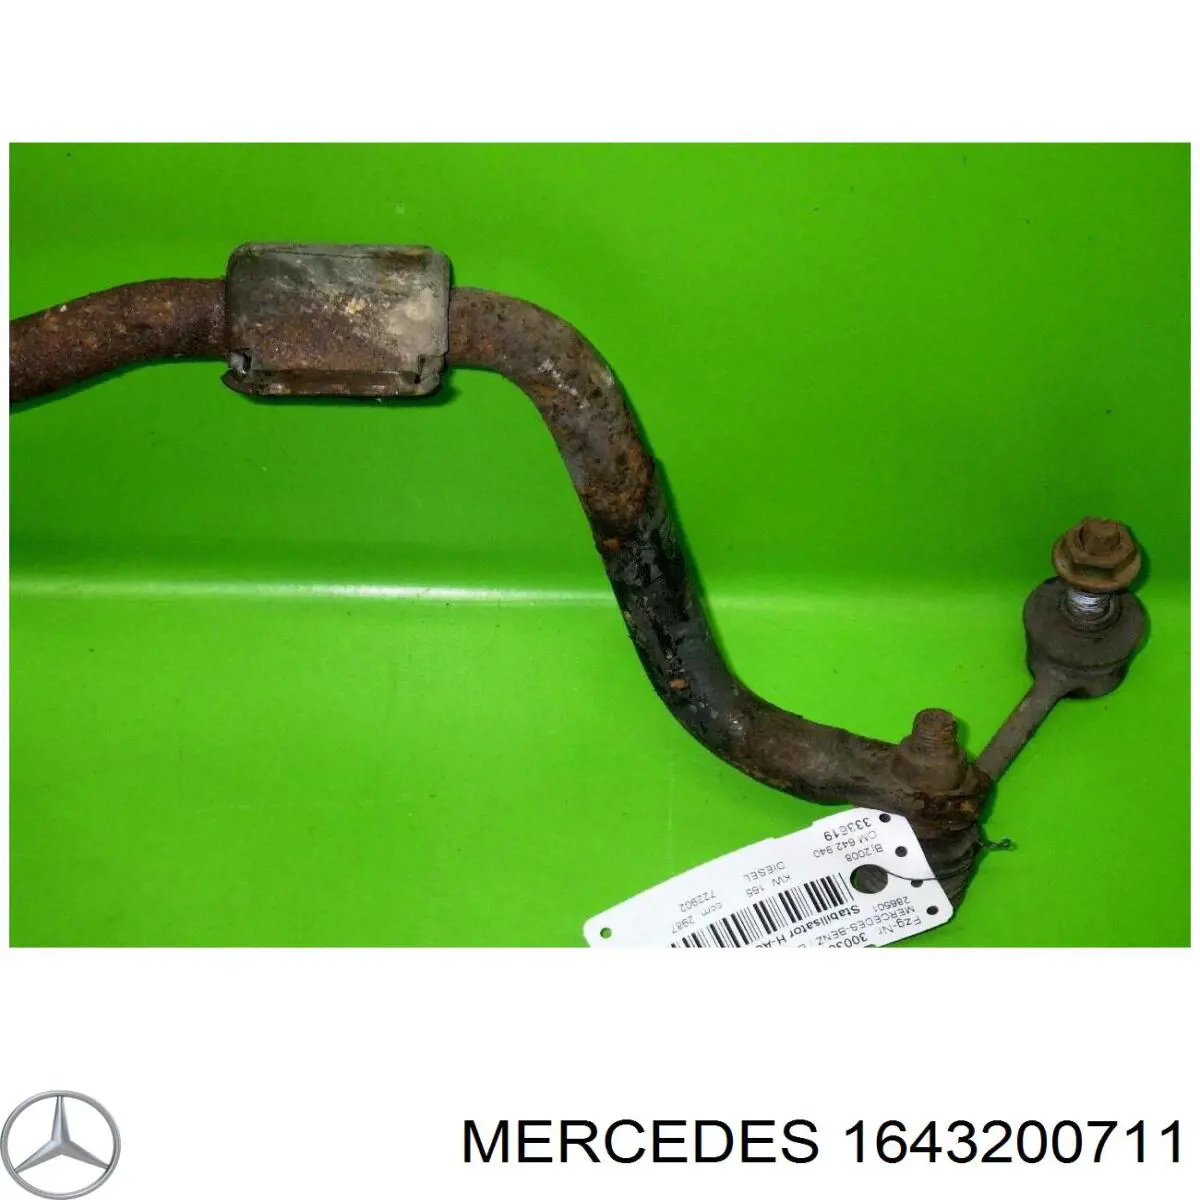 Задний стабилизатор Мерседес-бенц ЖЛ X164 (Mercedes GL-Class)